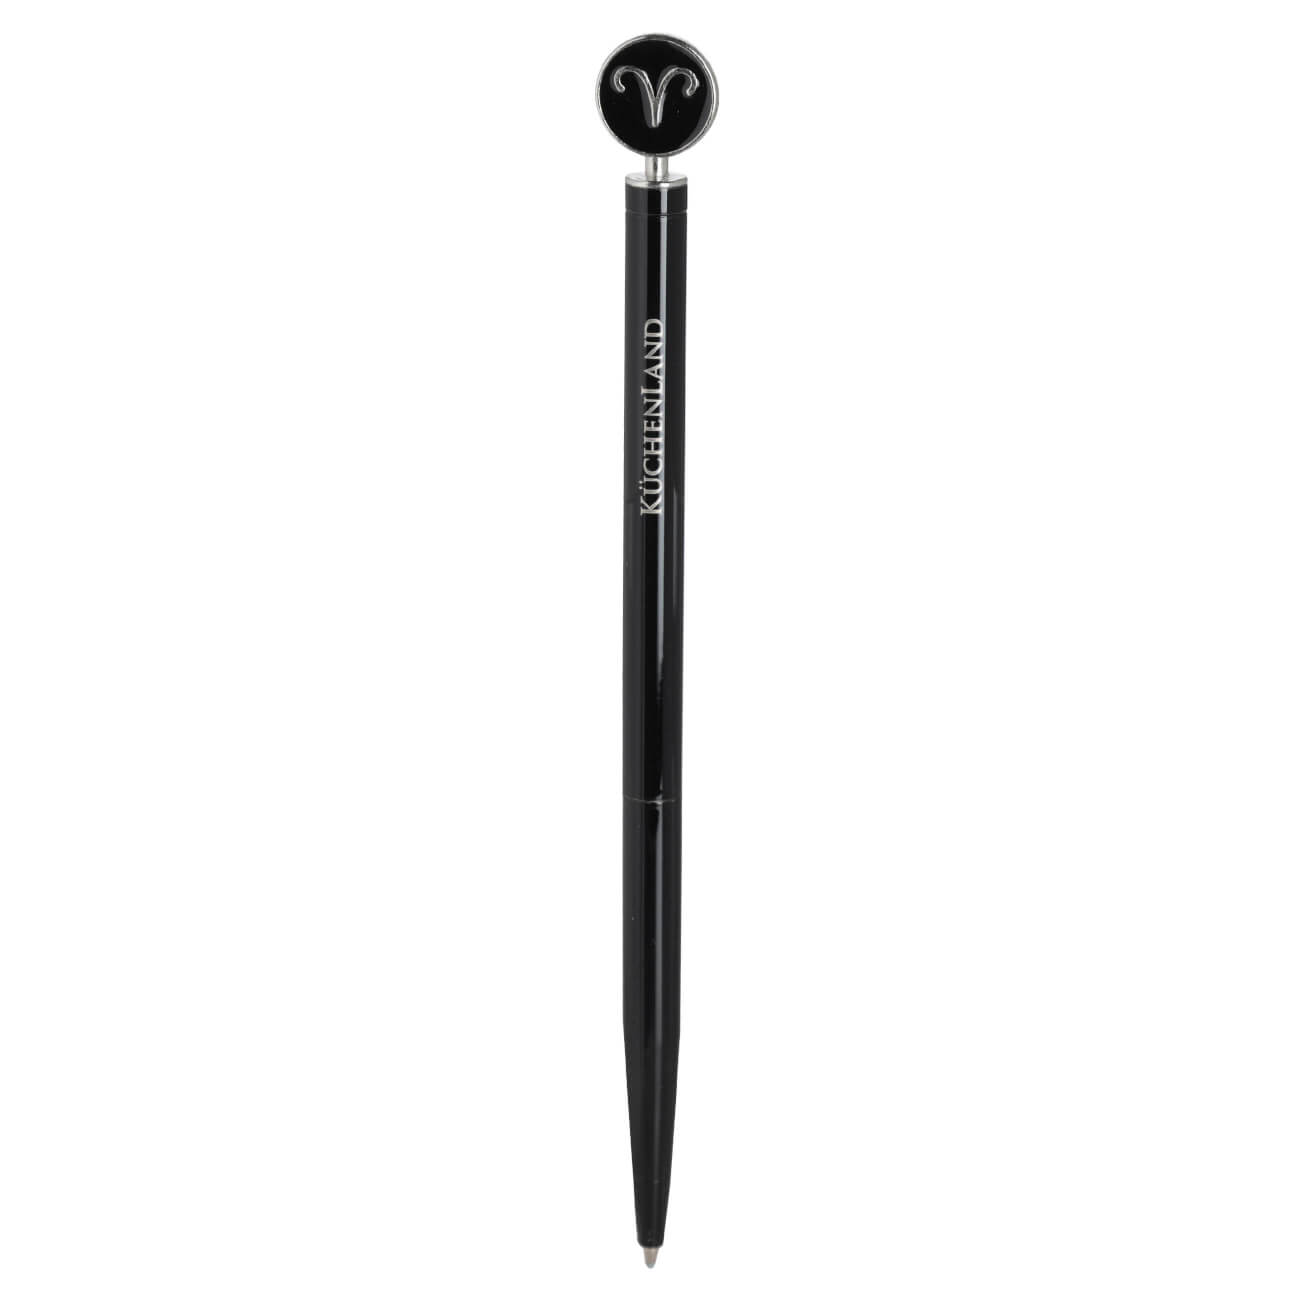 Ручка шариковая, 15 см, с фигуркой, сталь, черно-серебристая, Овен, Zodiac classic ручка шариковая